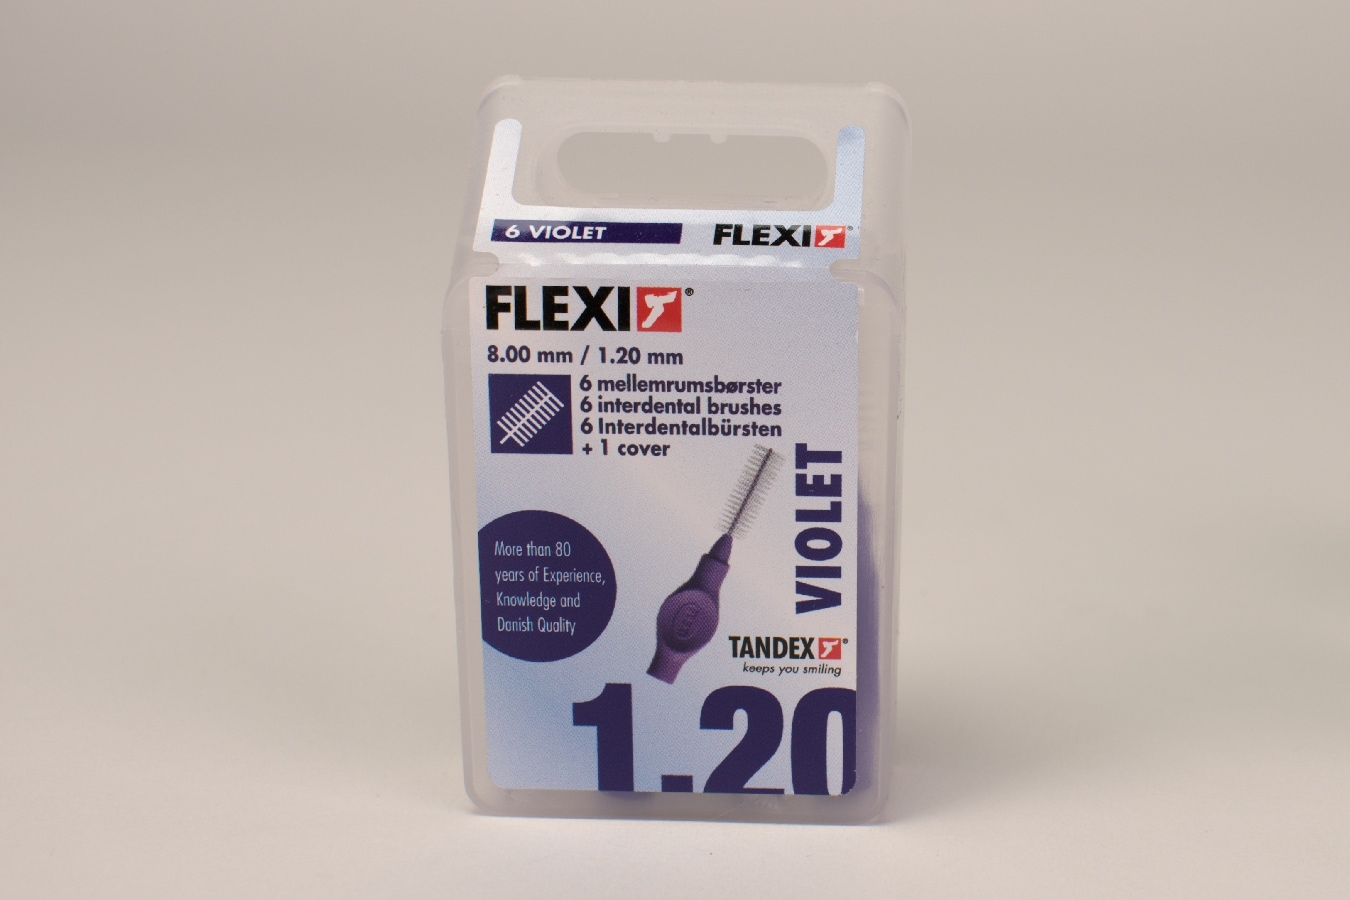 Mellanrumsborste FLEXI violett 1,20mm 6st